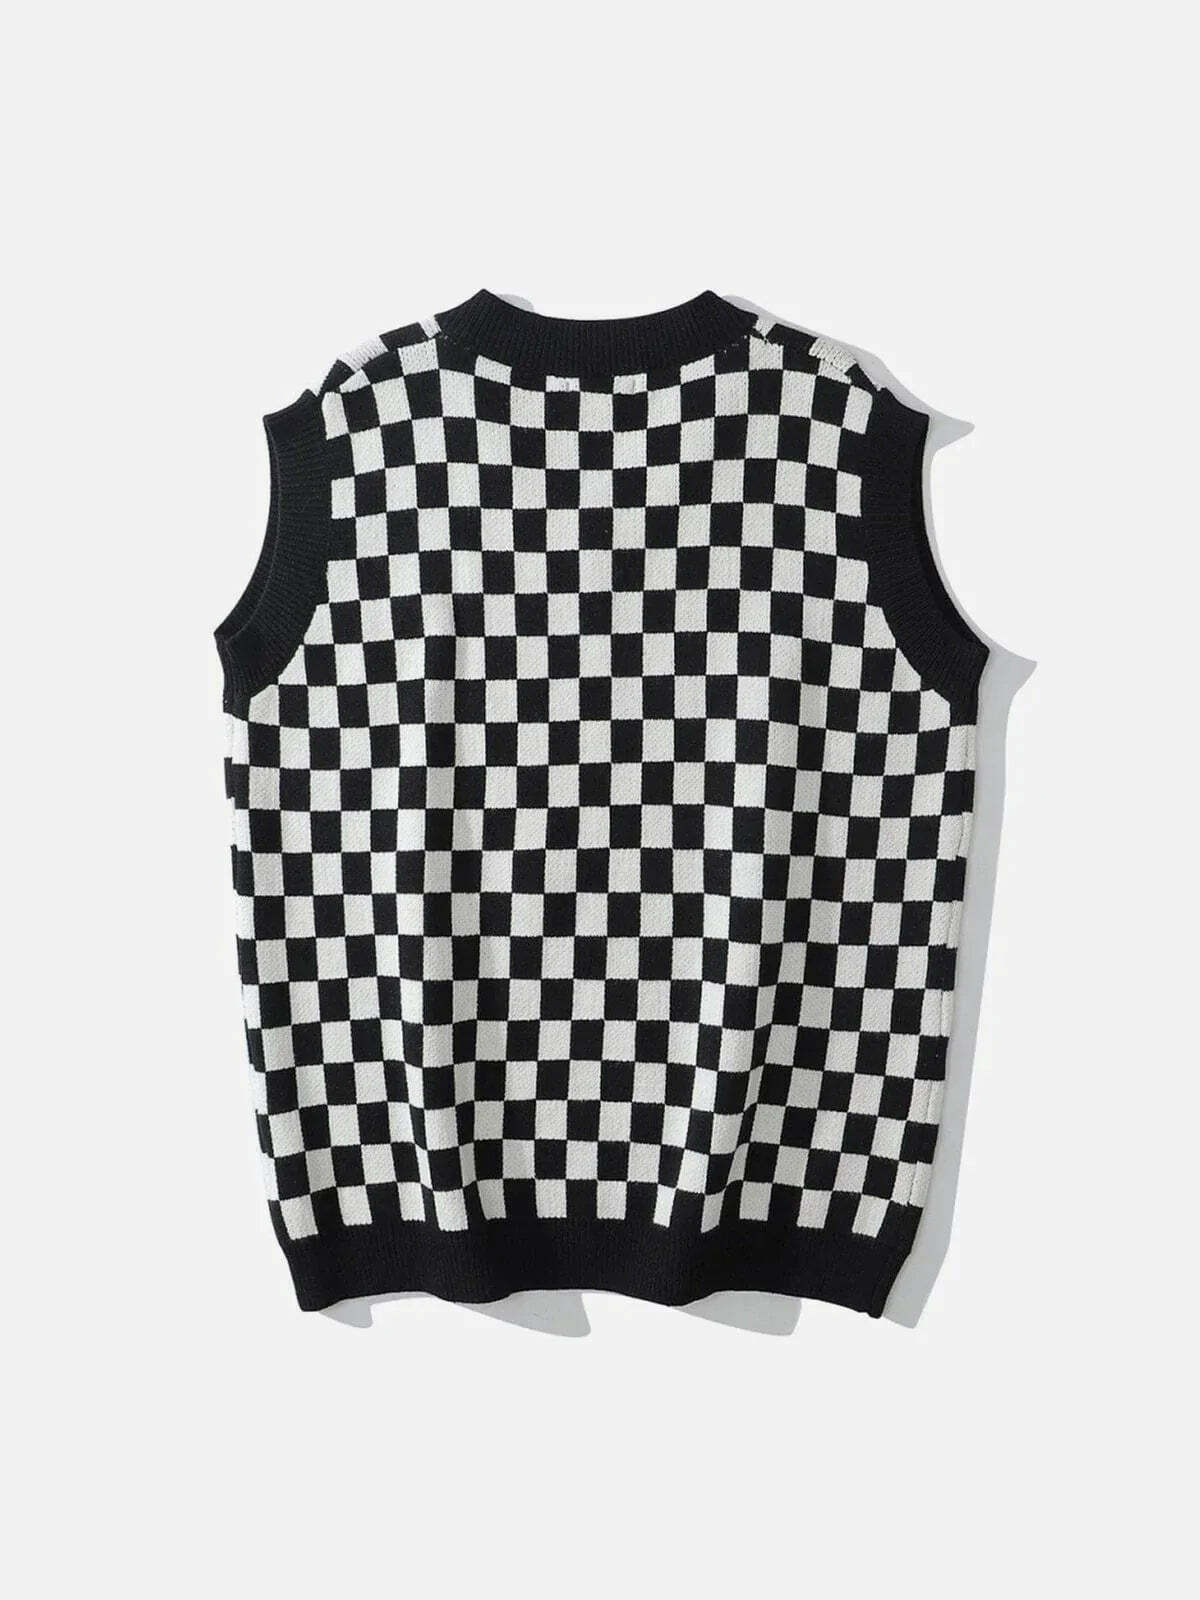 checkerboard print sweater vest edgy urban statement 2876